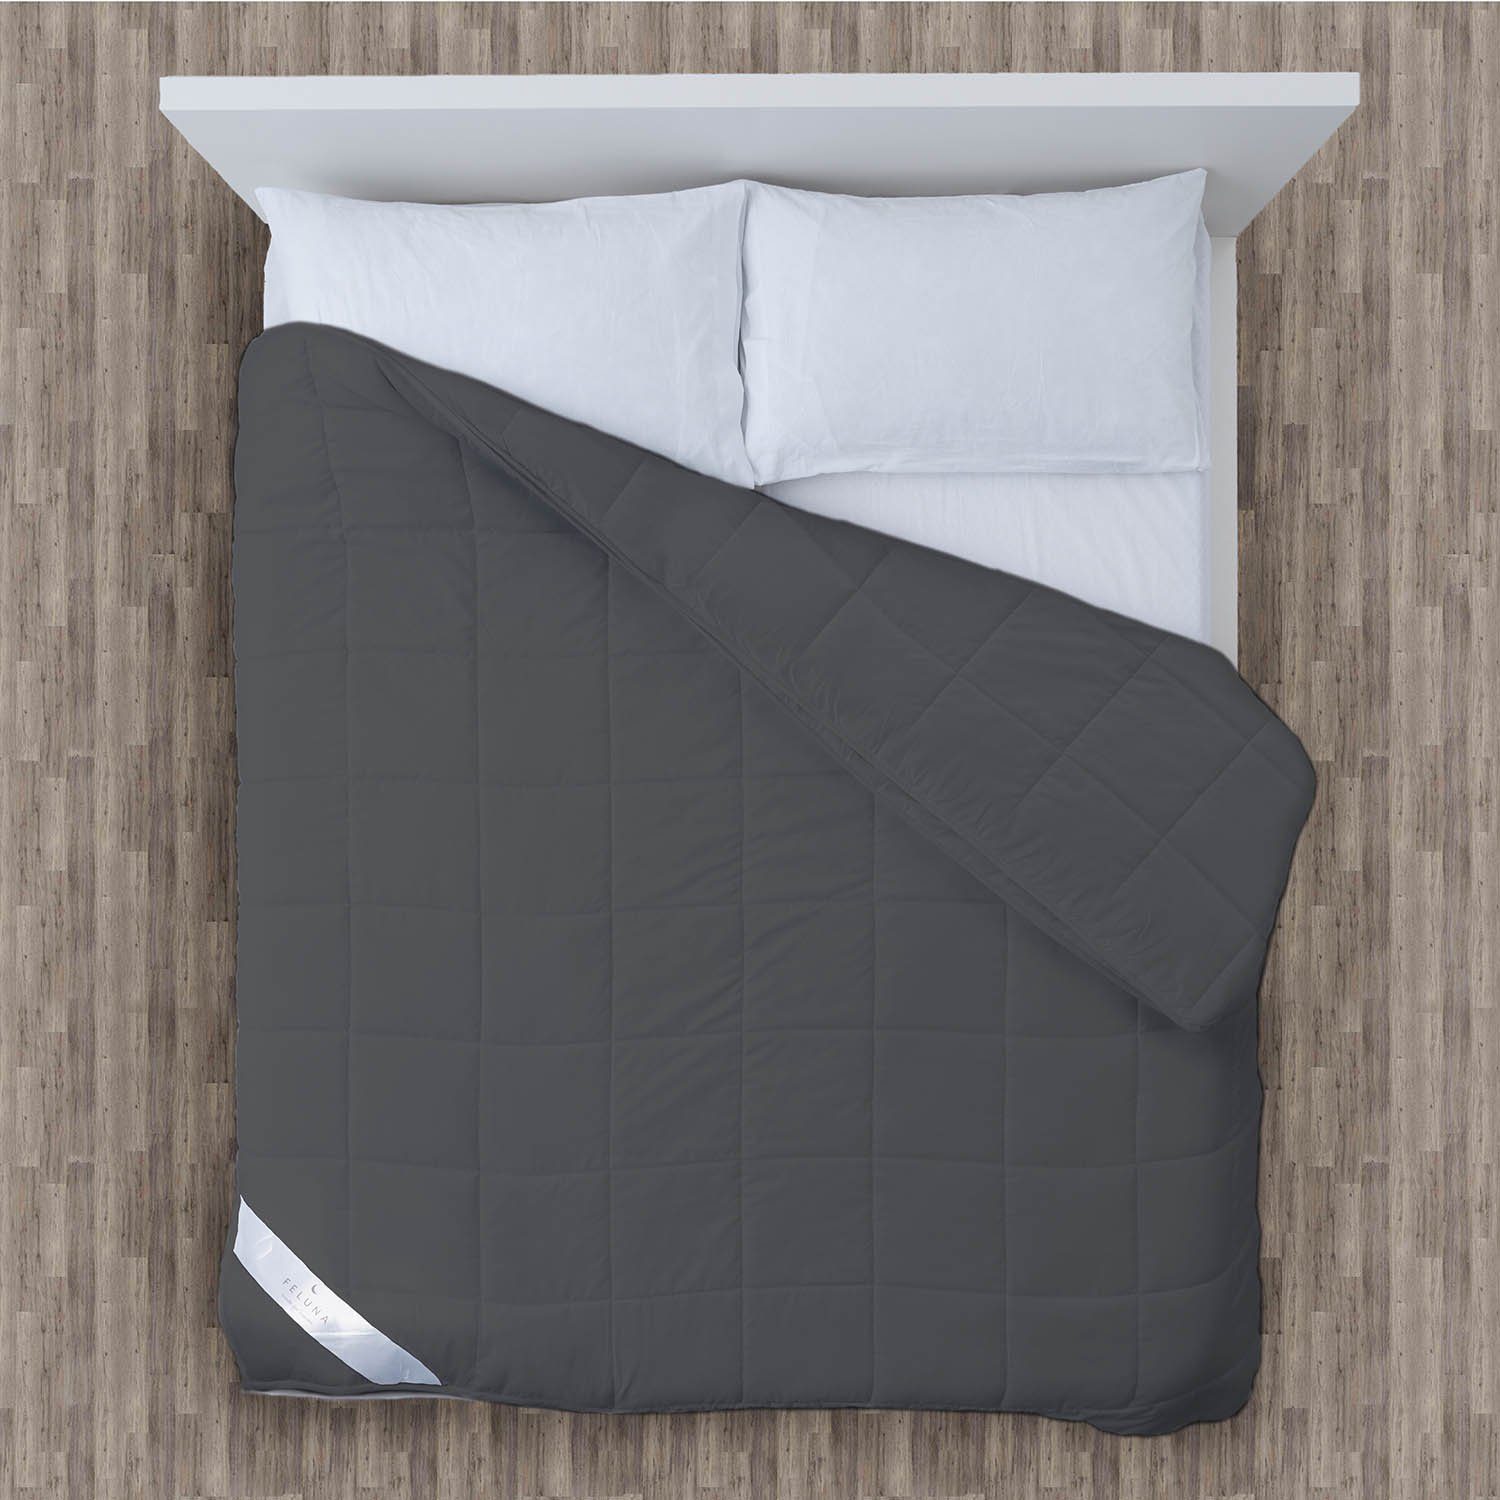 Gewichtsdecke, Schwerkraftdecke Bett-Decke Füllung: Weiß Glasmikroperlen Feluna, Therapiedecke, kg, 8 Anti-Stress